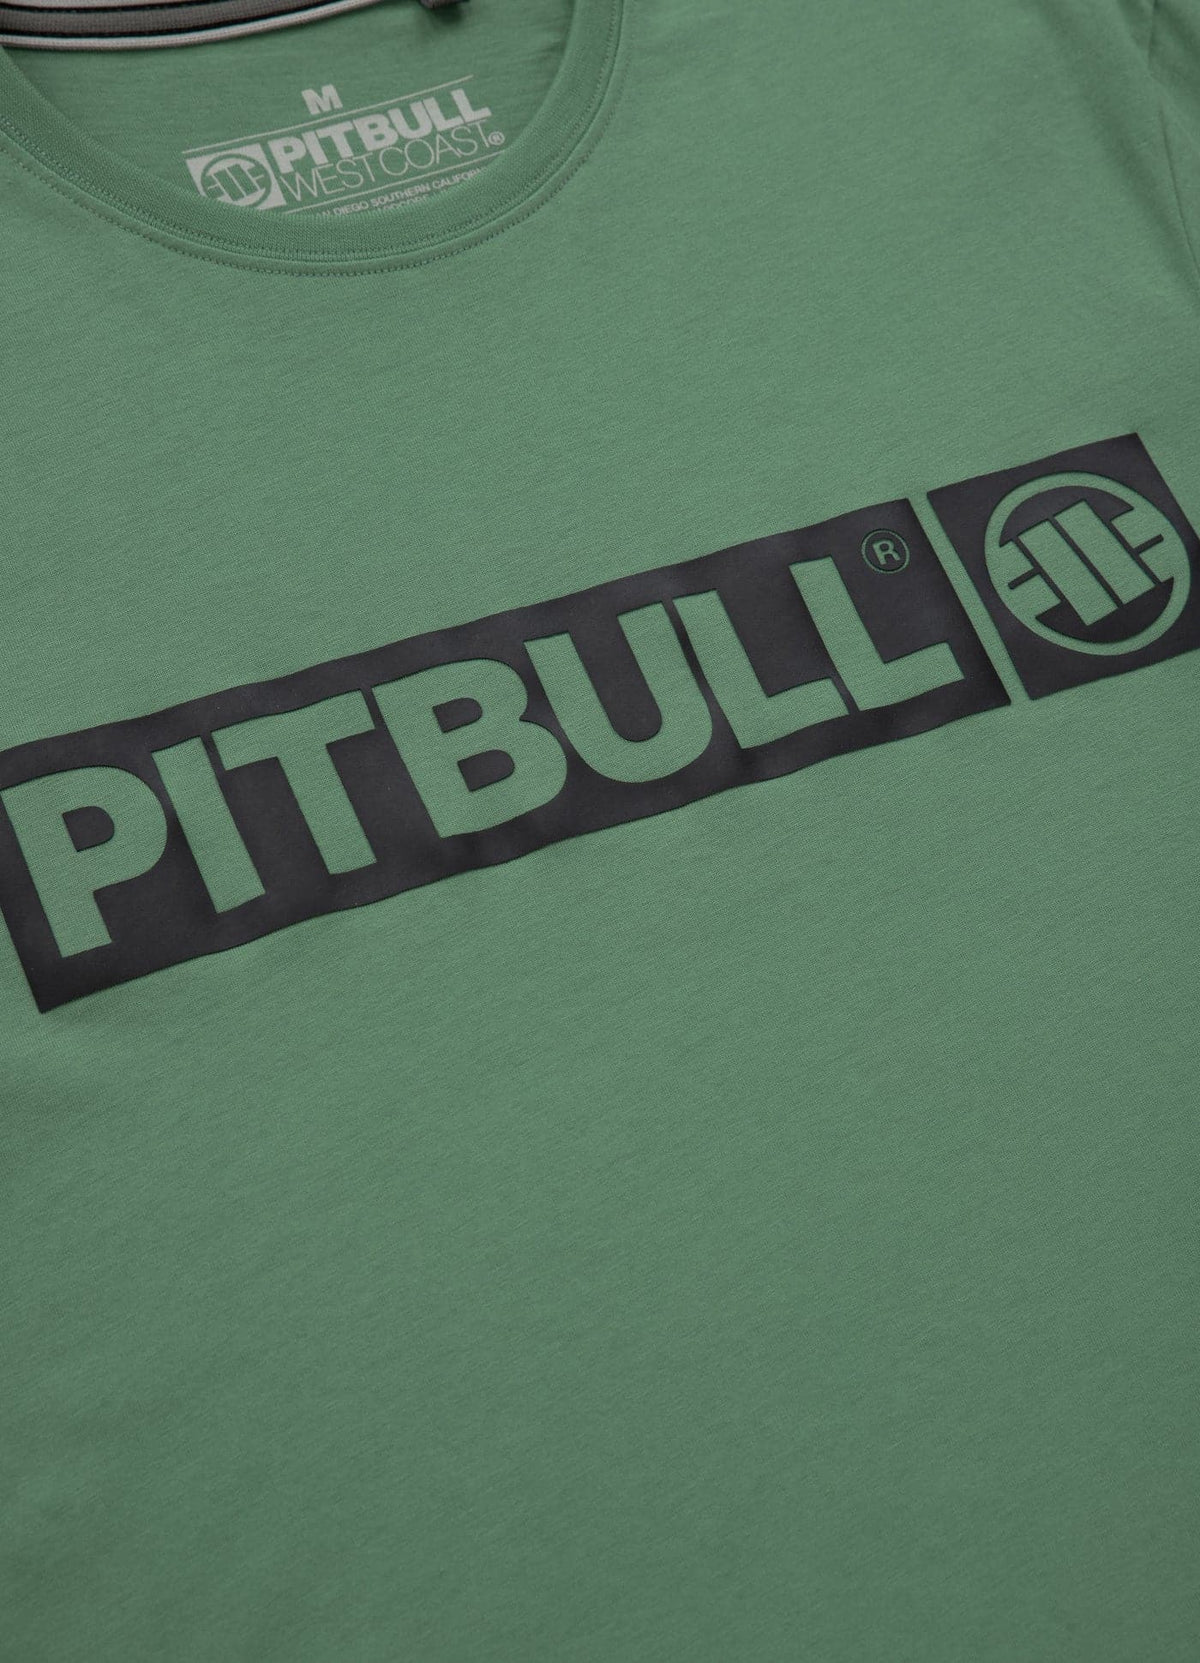 HILLTOP Lightweight Mint T-shirt - Pitbullstore.eu